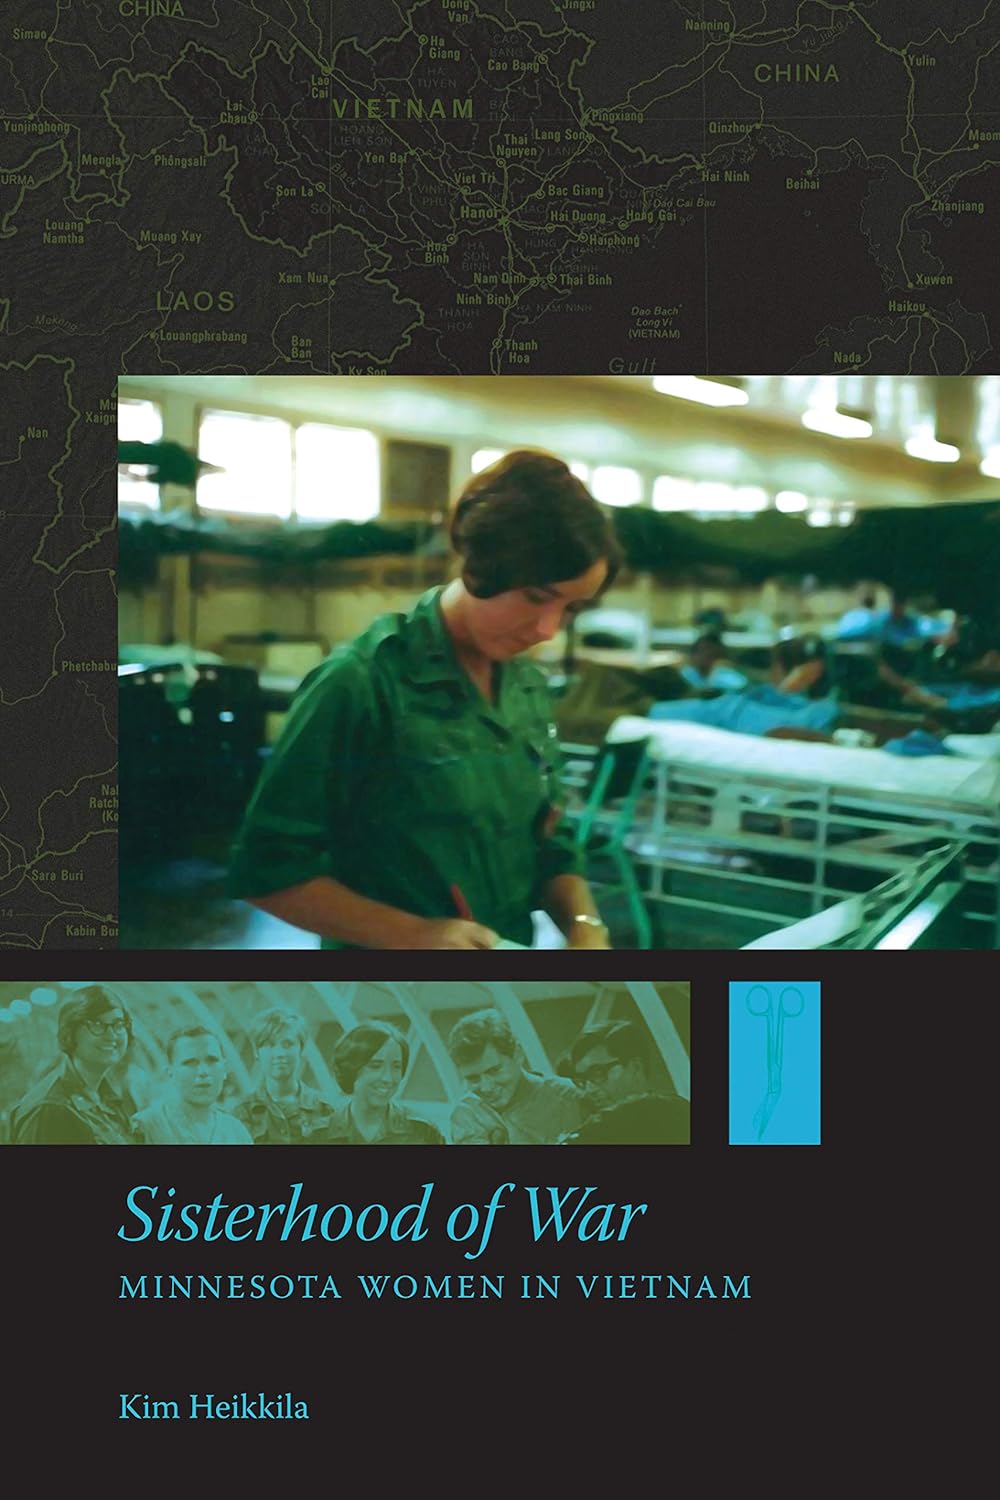 Sisterhood of War: Minnesota Women in Vietnam